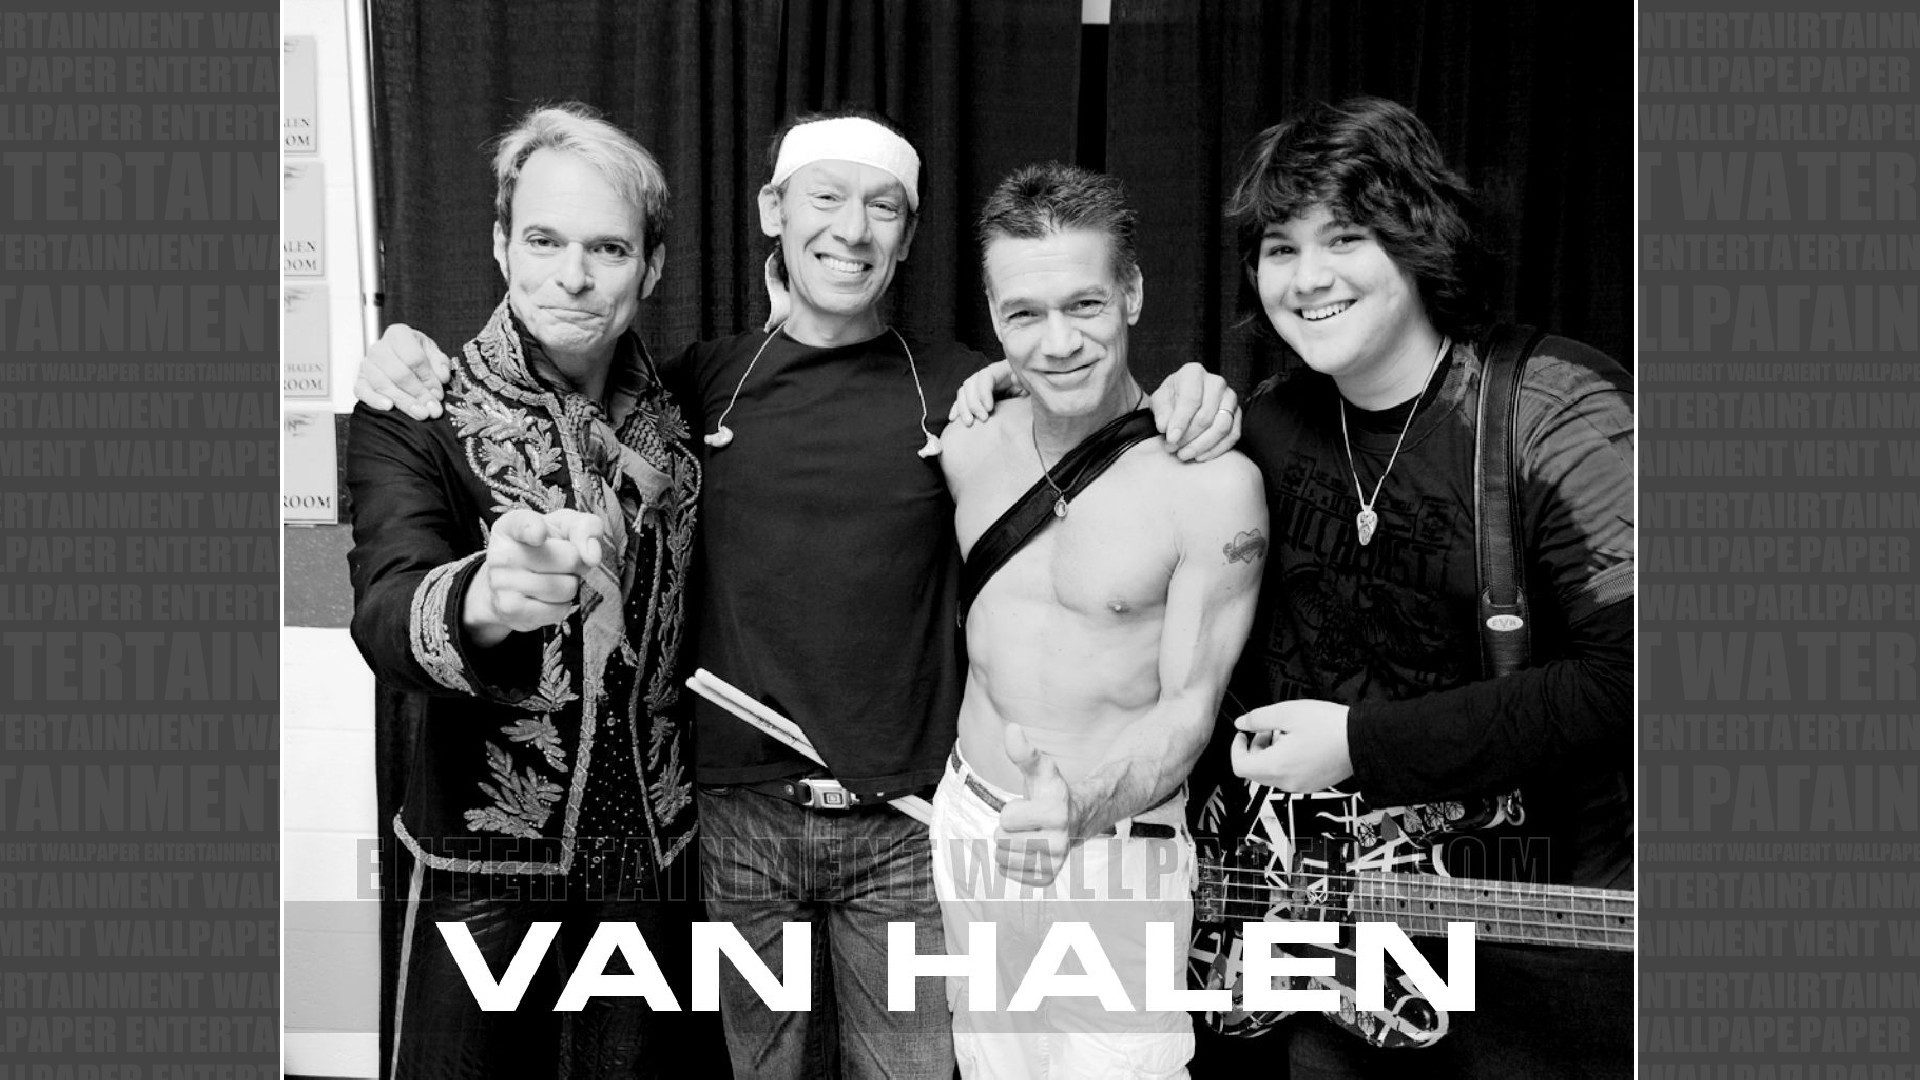 1920x1080 Van Halen Wallpaper - Original size, download now.